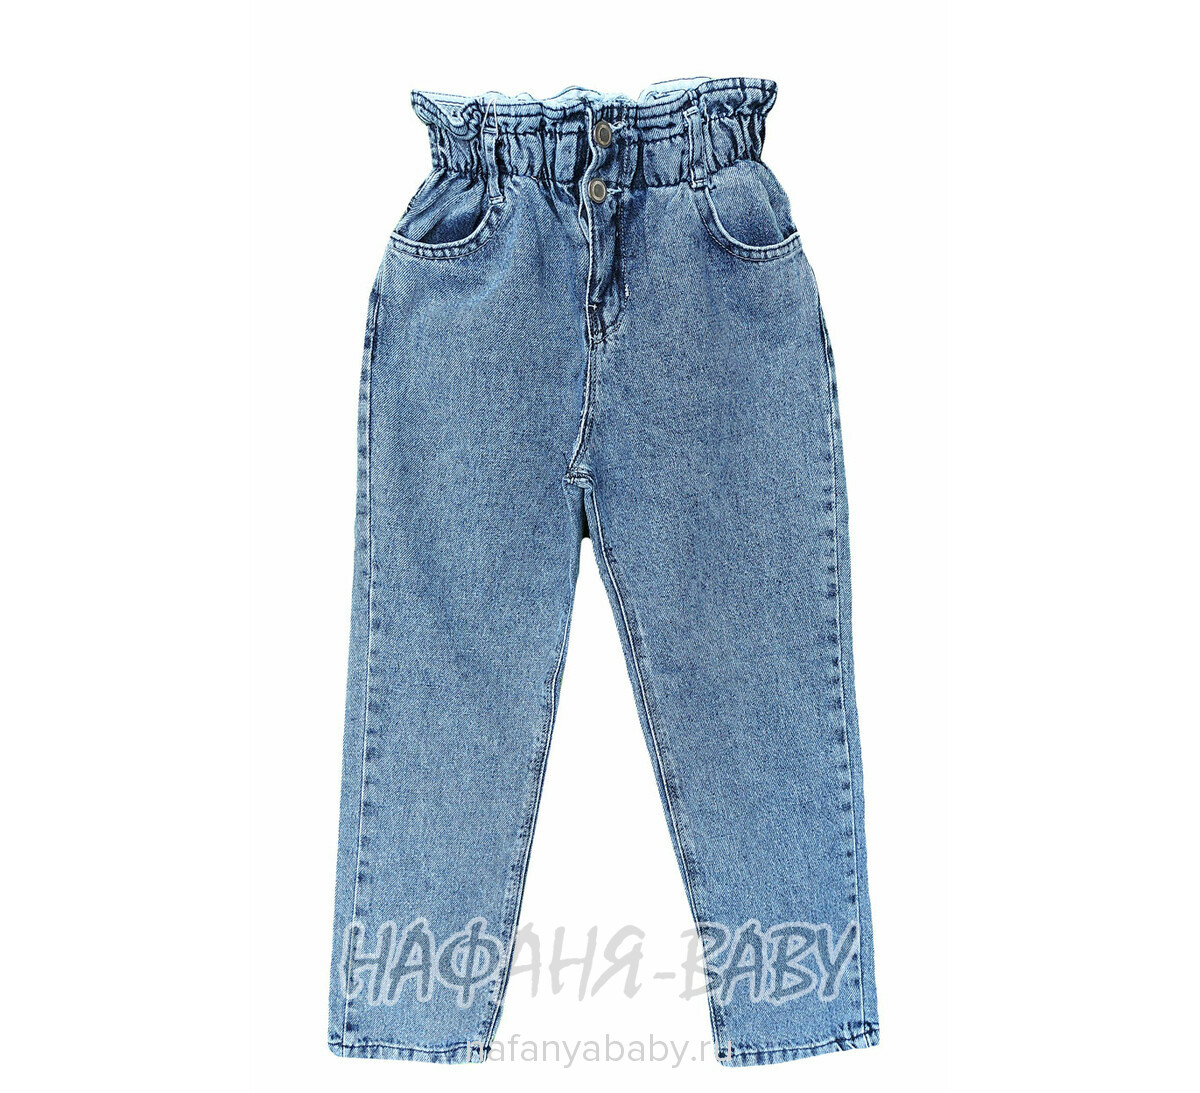 Джинсы ELEYSA Jeans арт: 6131 для девочки от 8 до 12 лет, цвет синий, оптом Турция